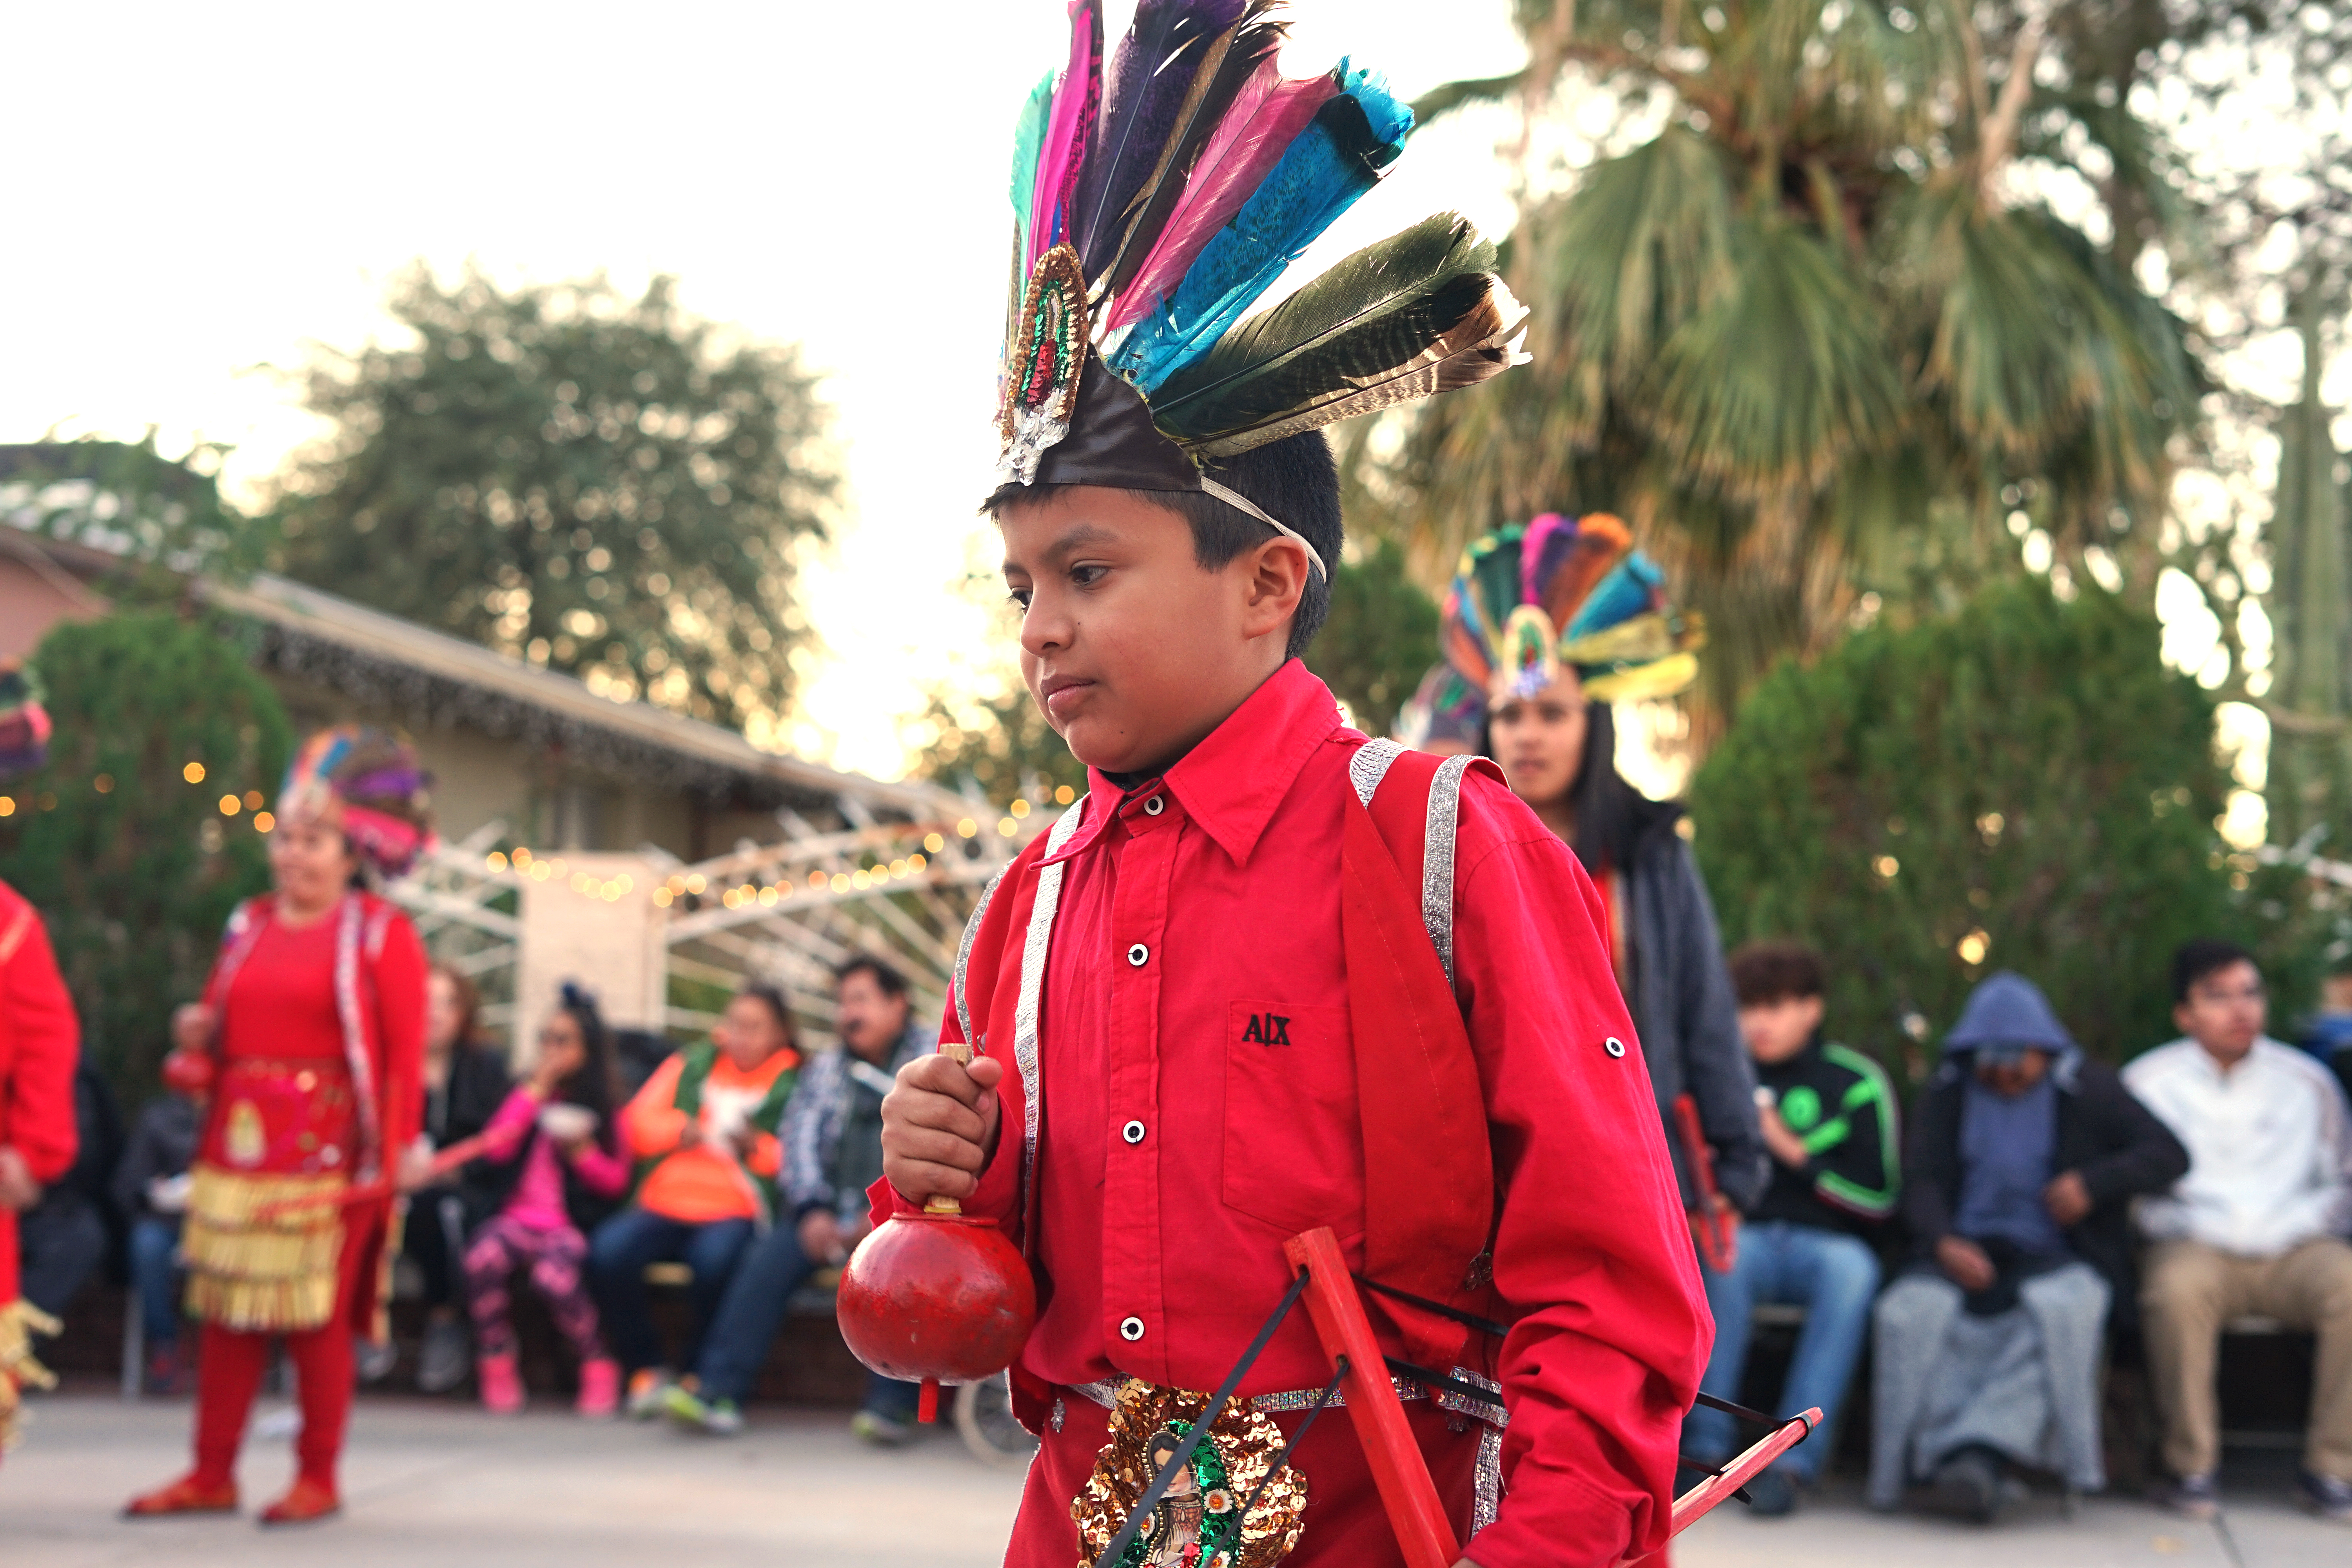 A child dressed up for Las Posadas